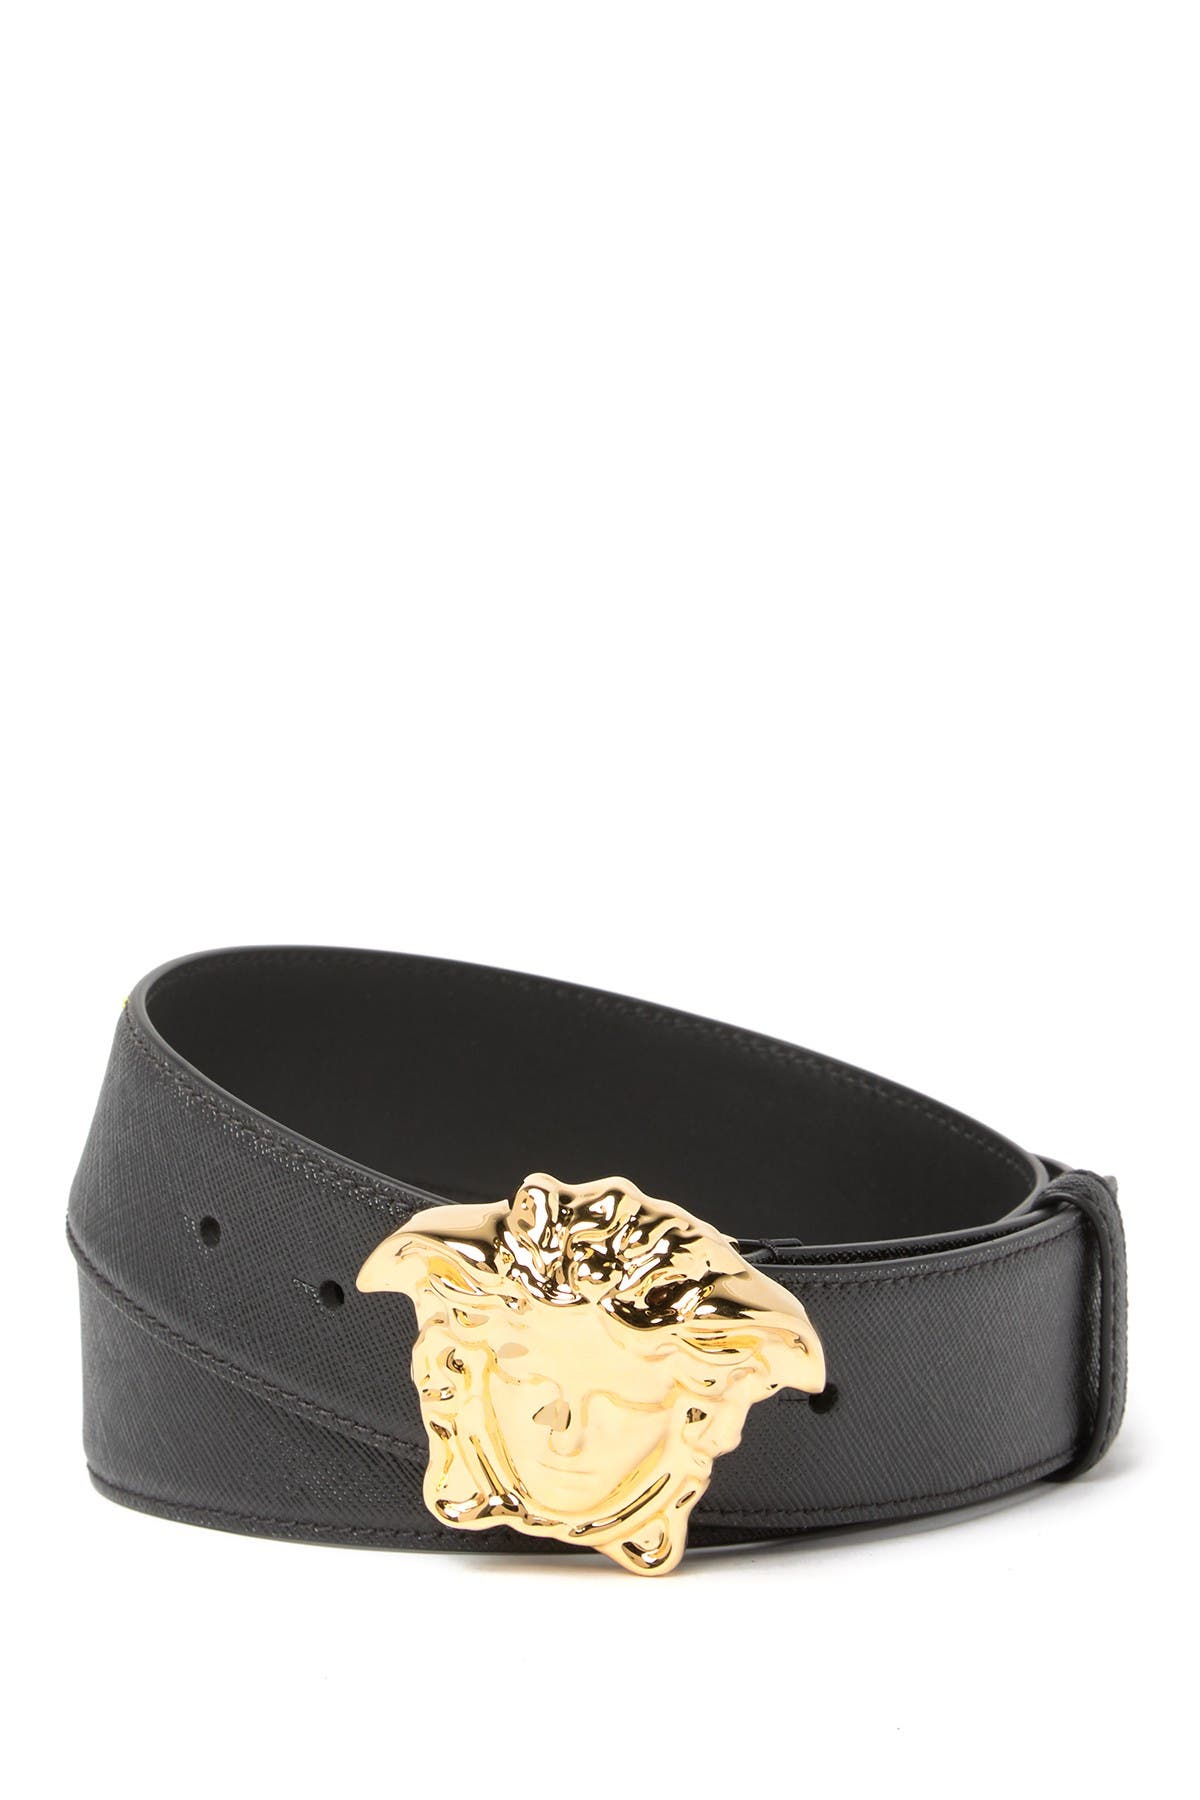 Versace | Medusa Head Leather Belt 